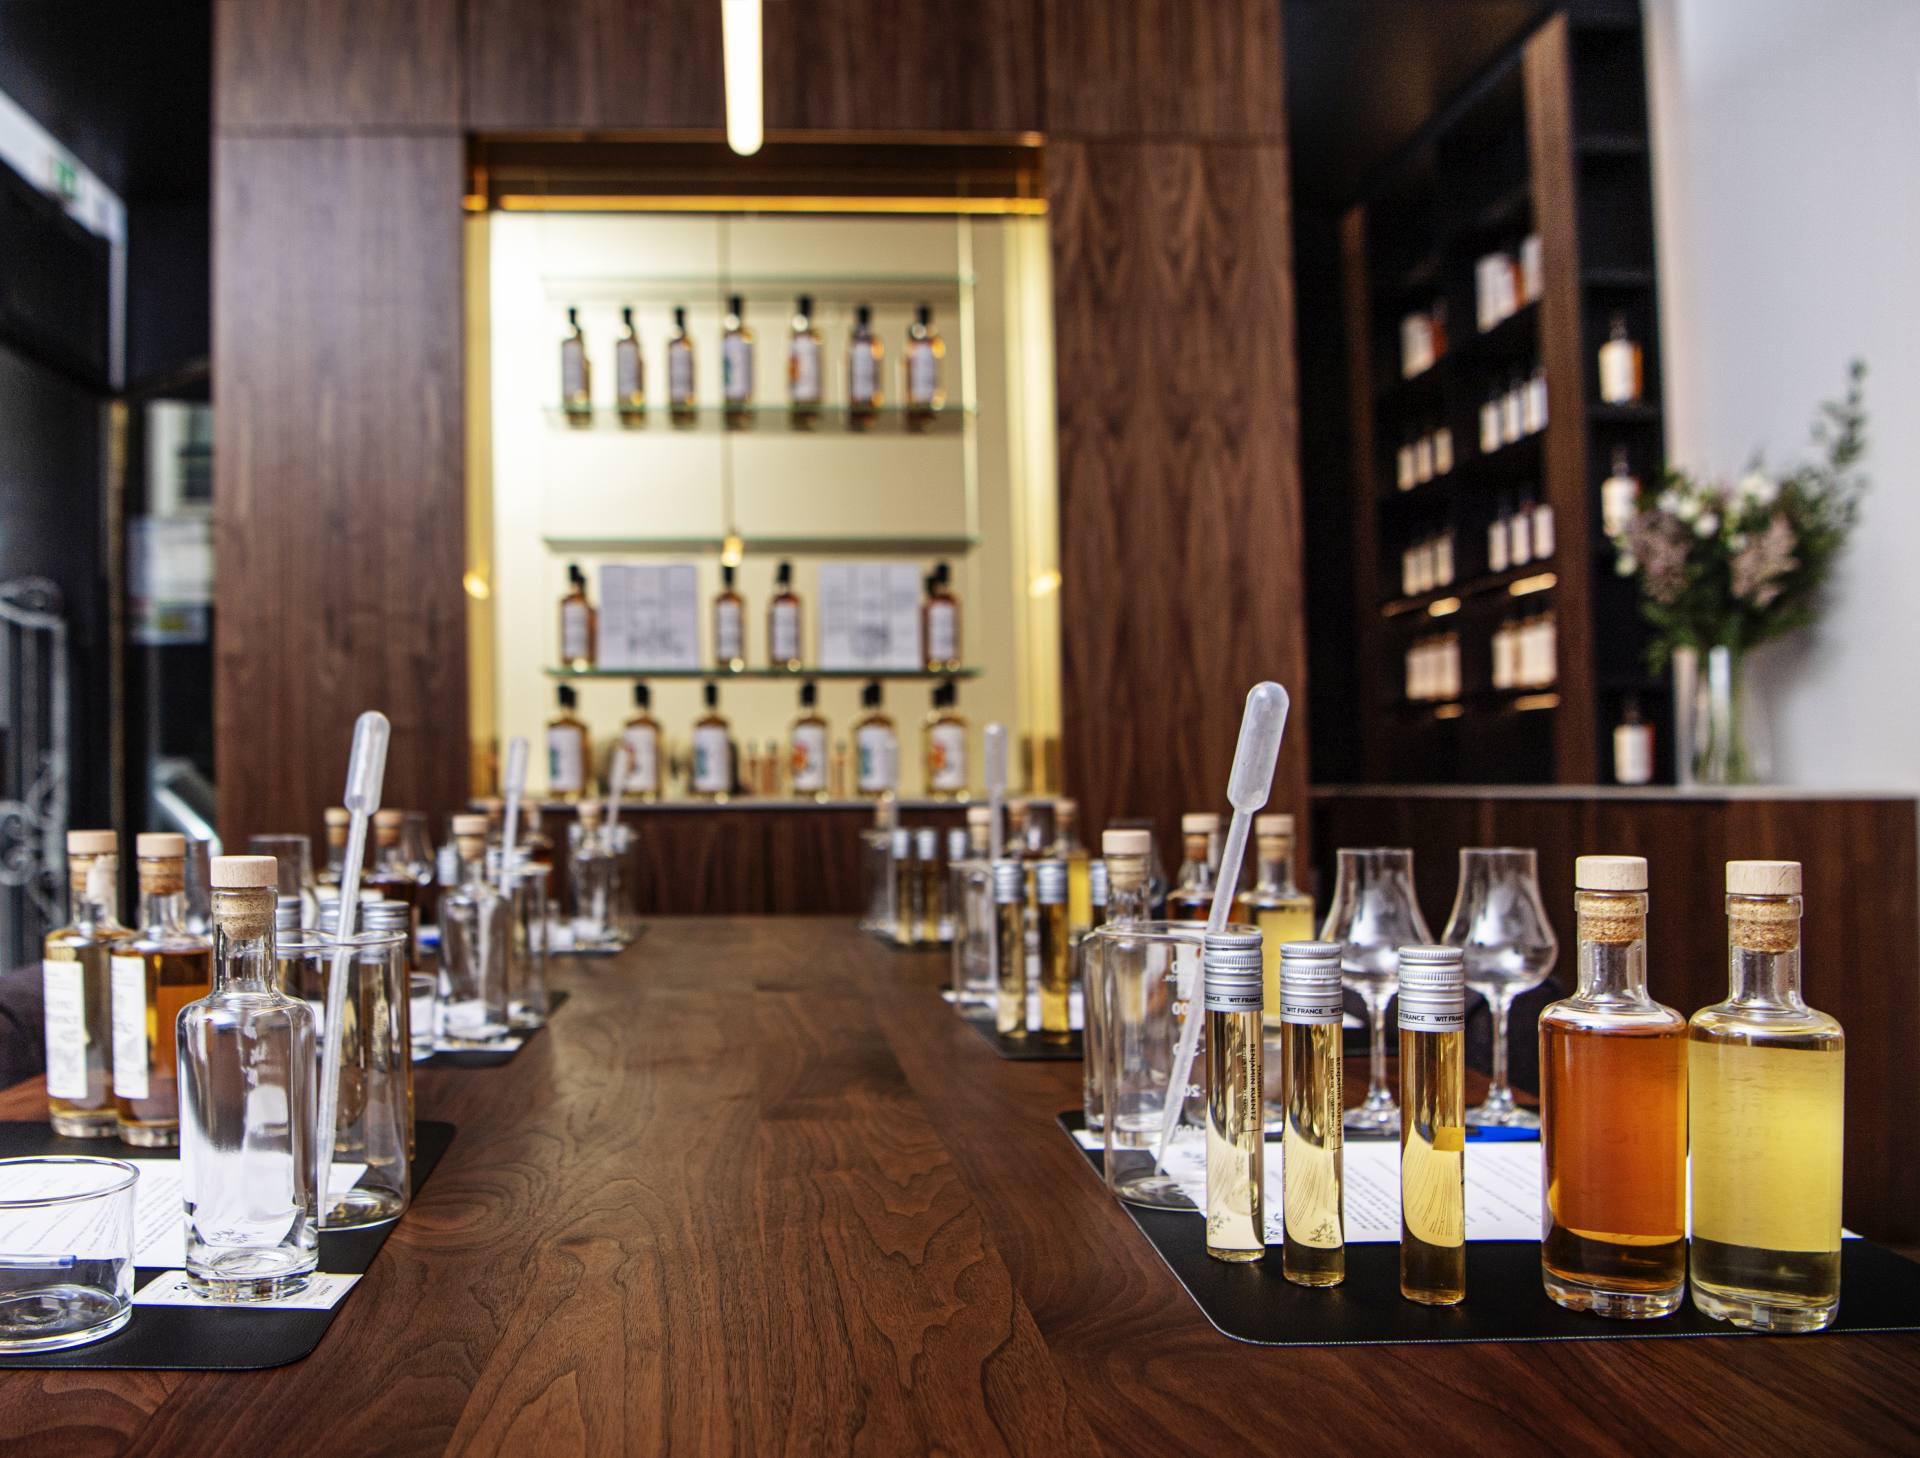 L'Atelier Créez votre whisky - Maison Benjamin Kuentz